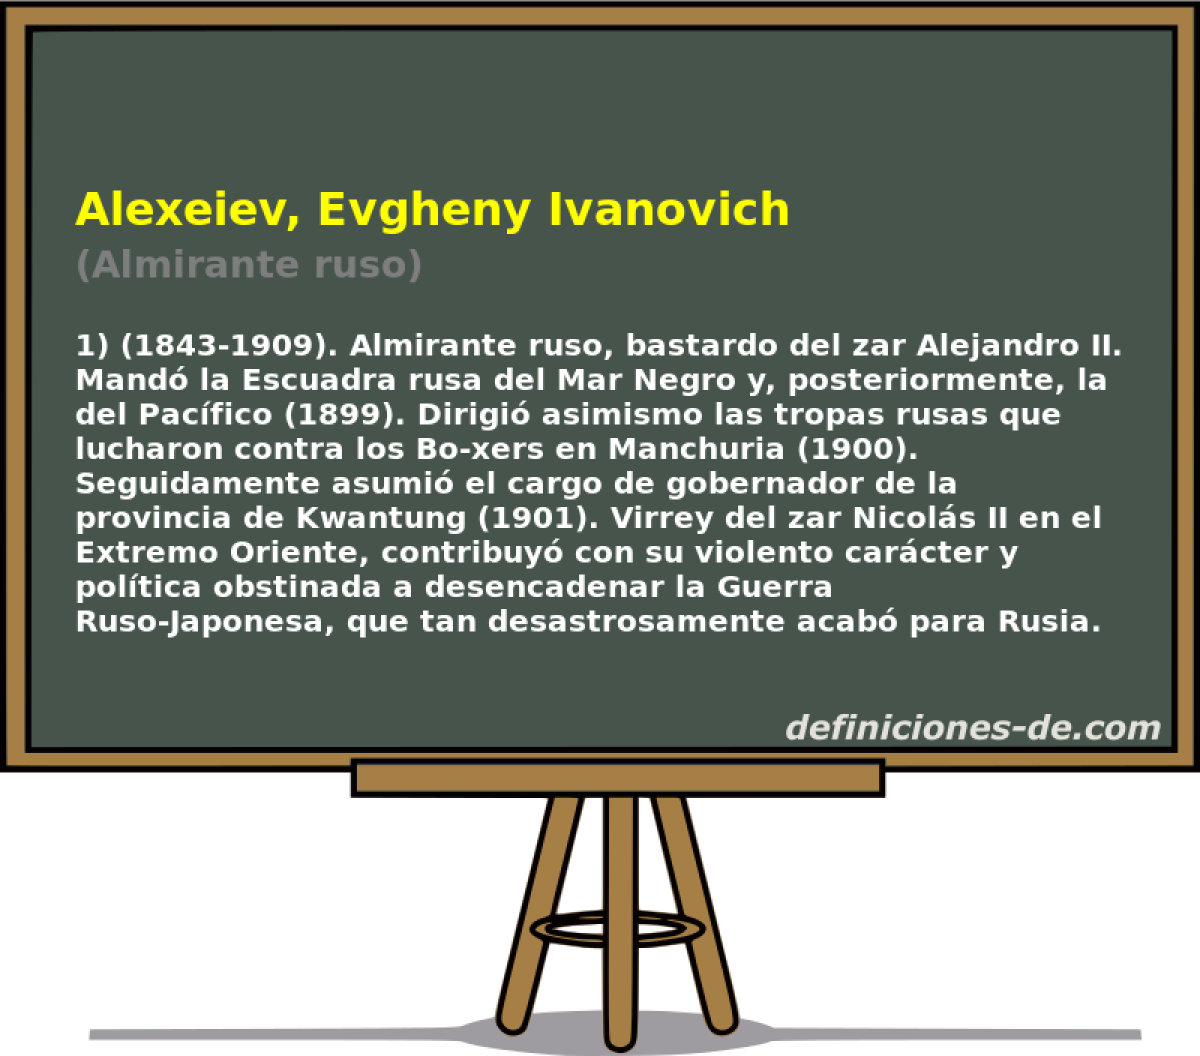 Alexeiev, Evgheny Ivanovich (Almirante ruso)